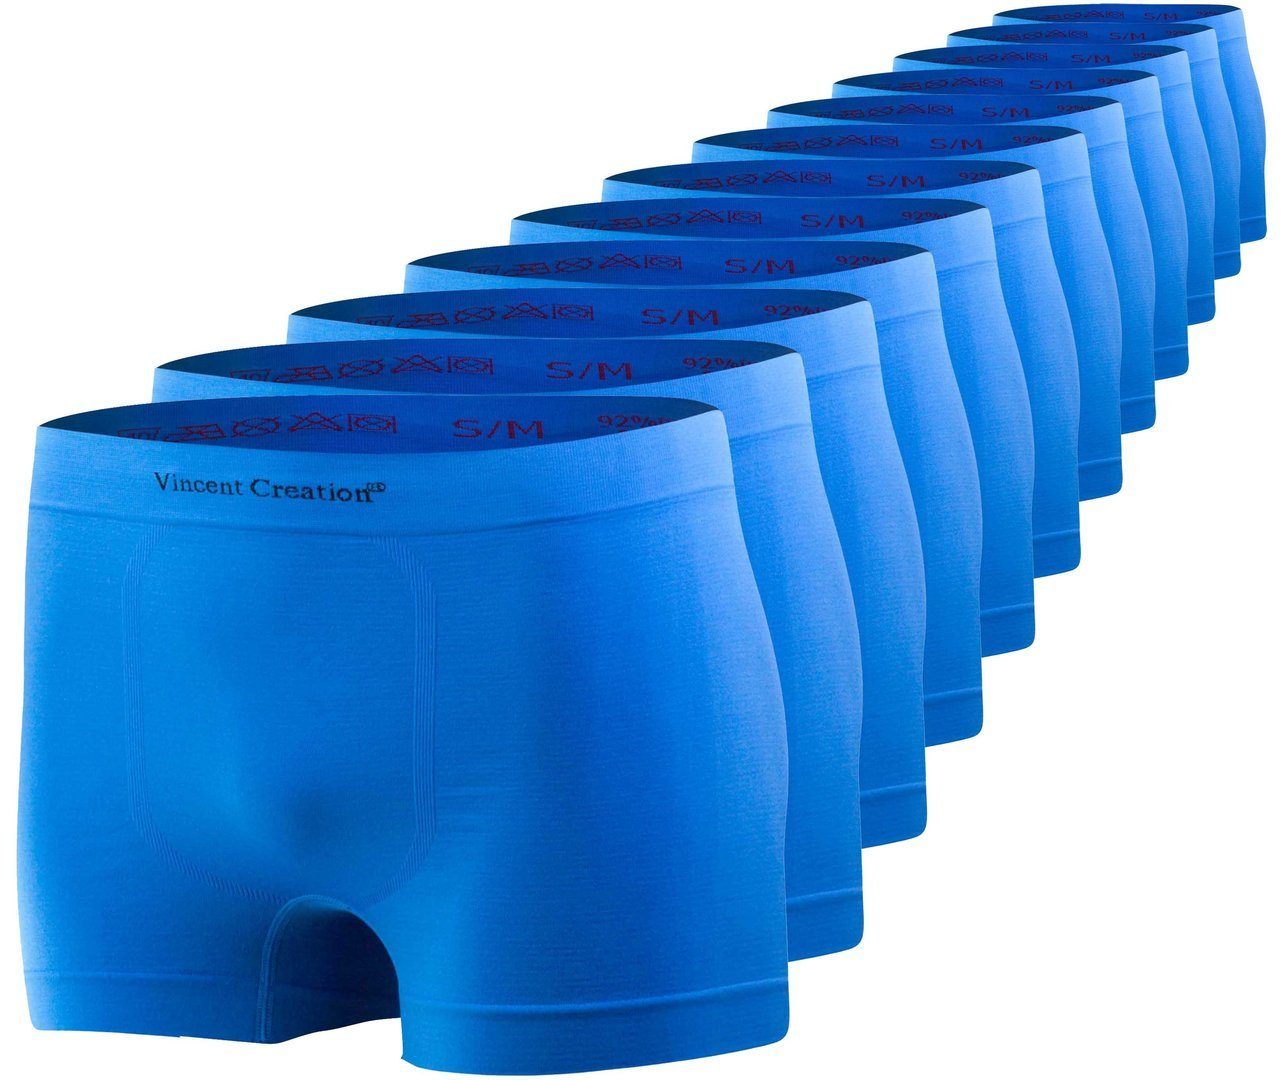 Wäsche/Bademode Boxershorts Vincent Creation® Boxershorts 12er Pack, Microfaser - Seamless (12 Stück) weiche Microfaser-Qualität